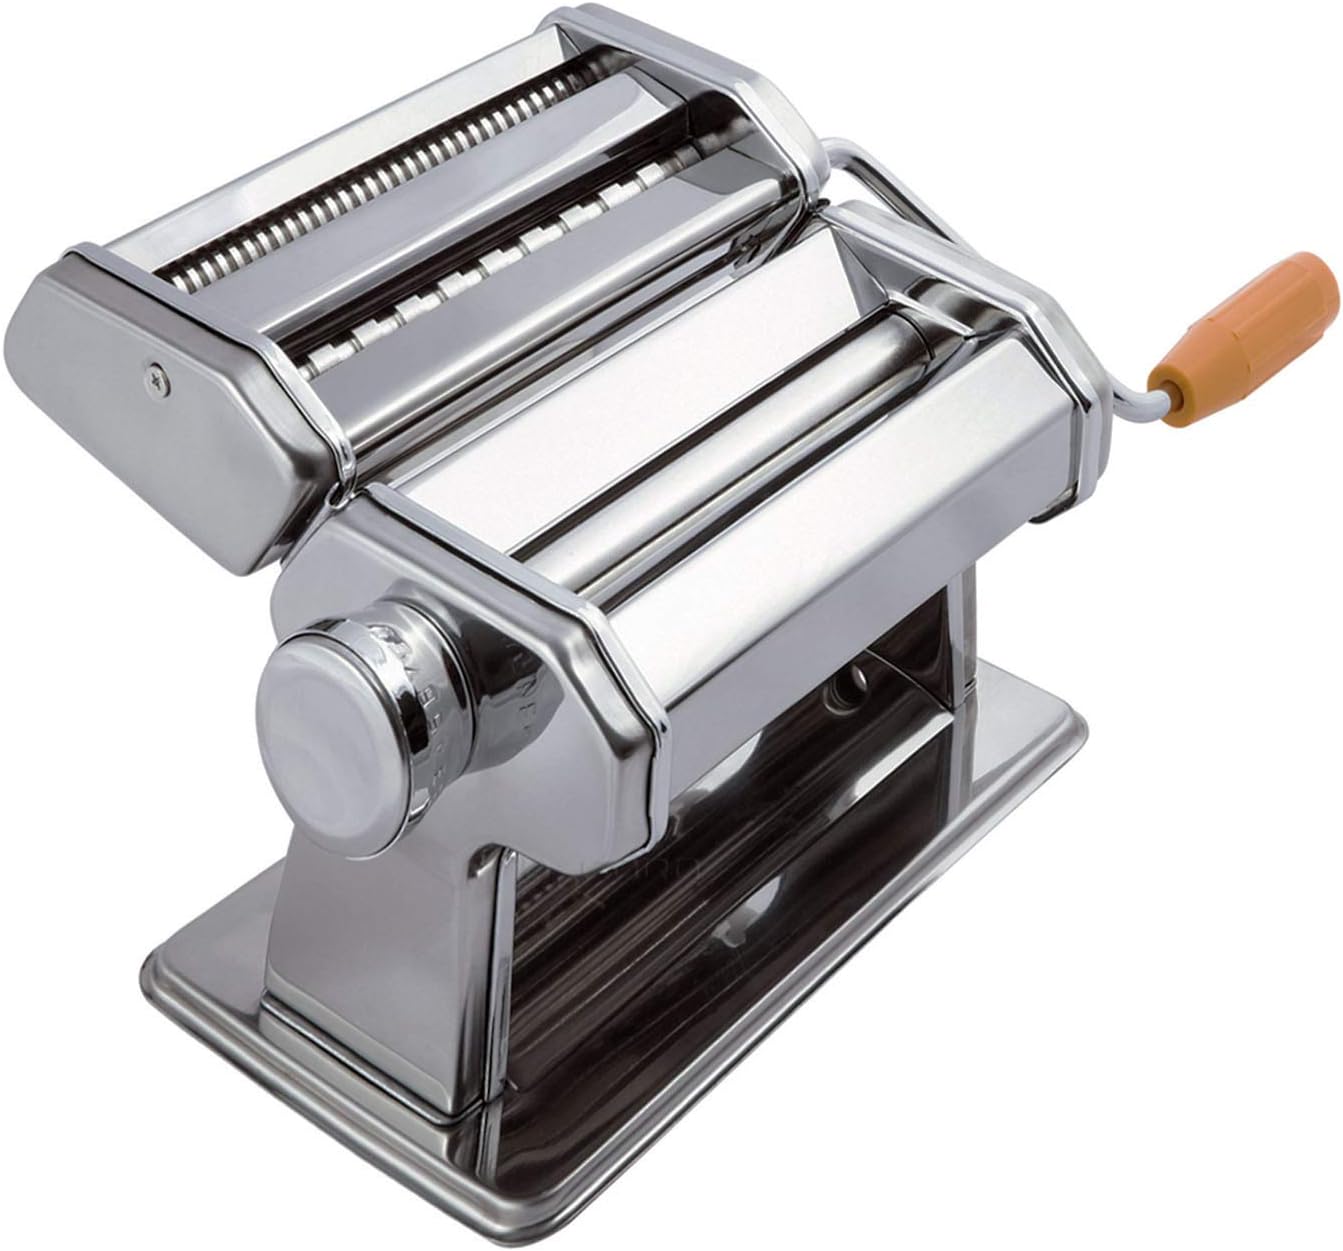 OxGord Pasta Maker Machine